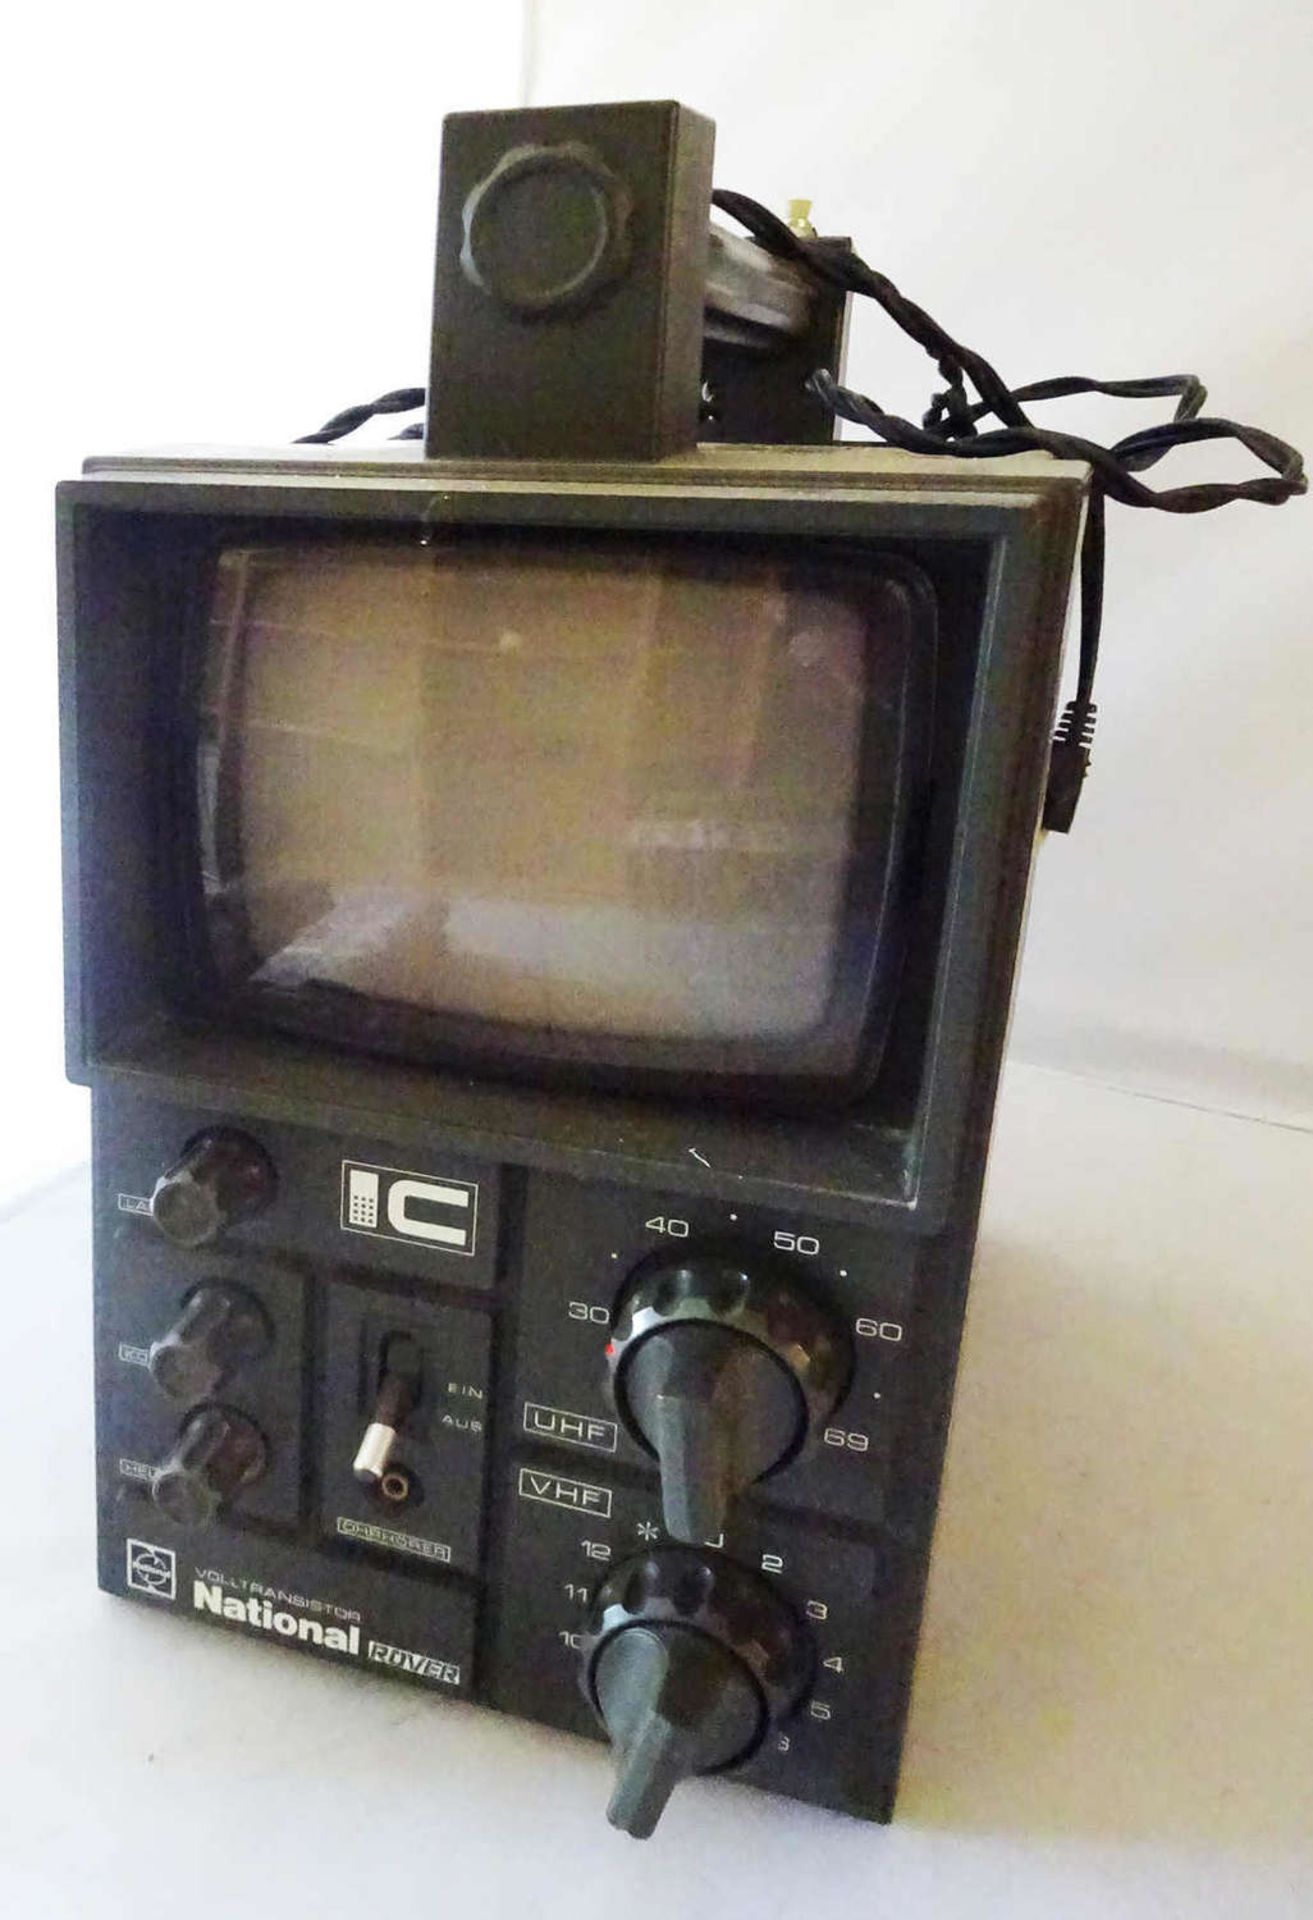 Tragbares TV Gerät. Volltransistor National Rover. Ca. Mitte 70er Jahre. Funktion nicht geprüft.